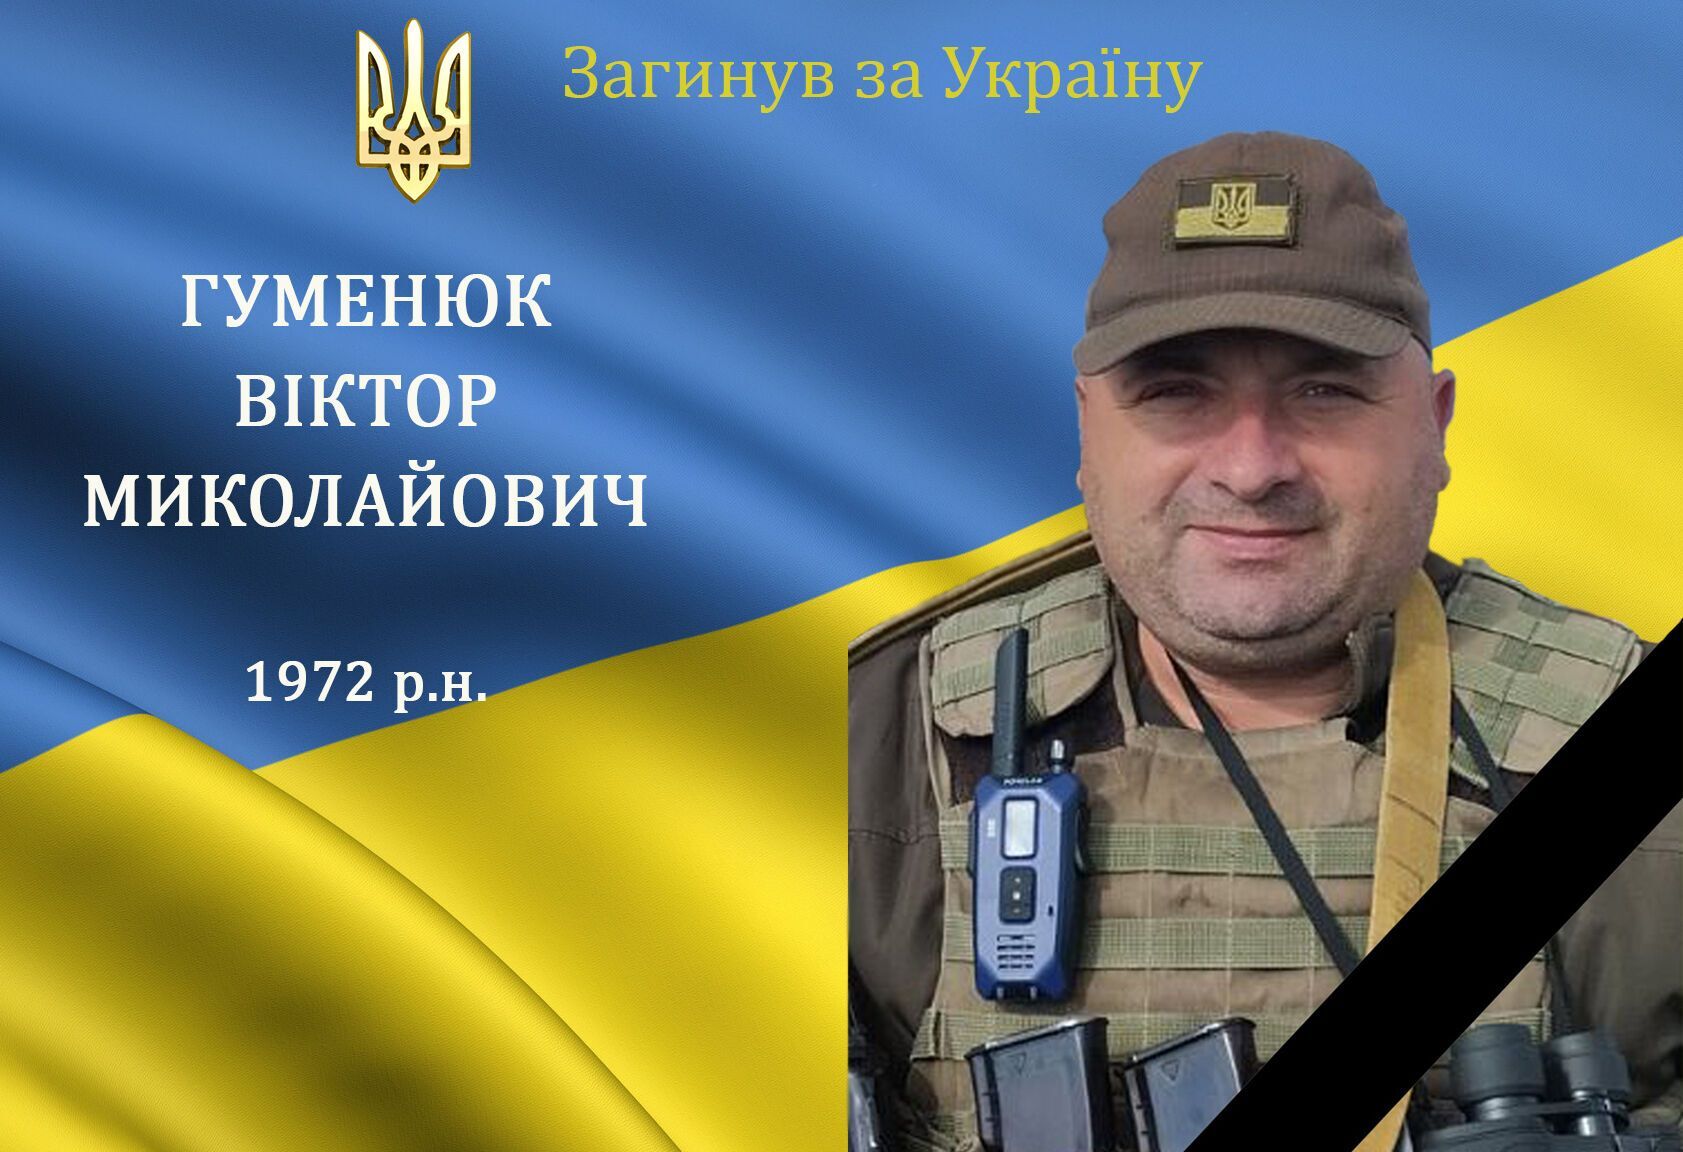 Украинский военнослужащий Гуменюк Виктор Николаевич